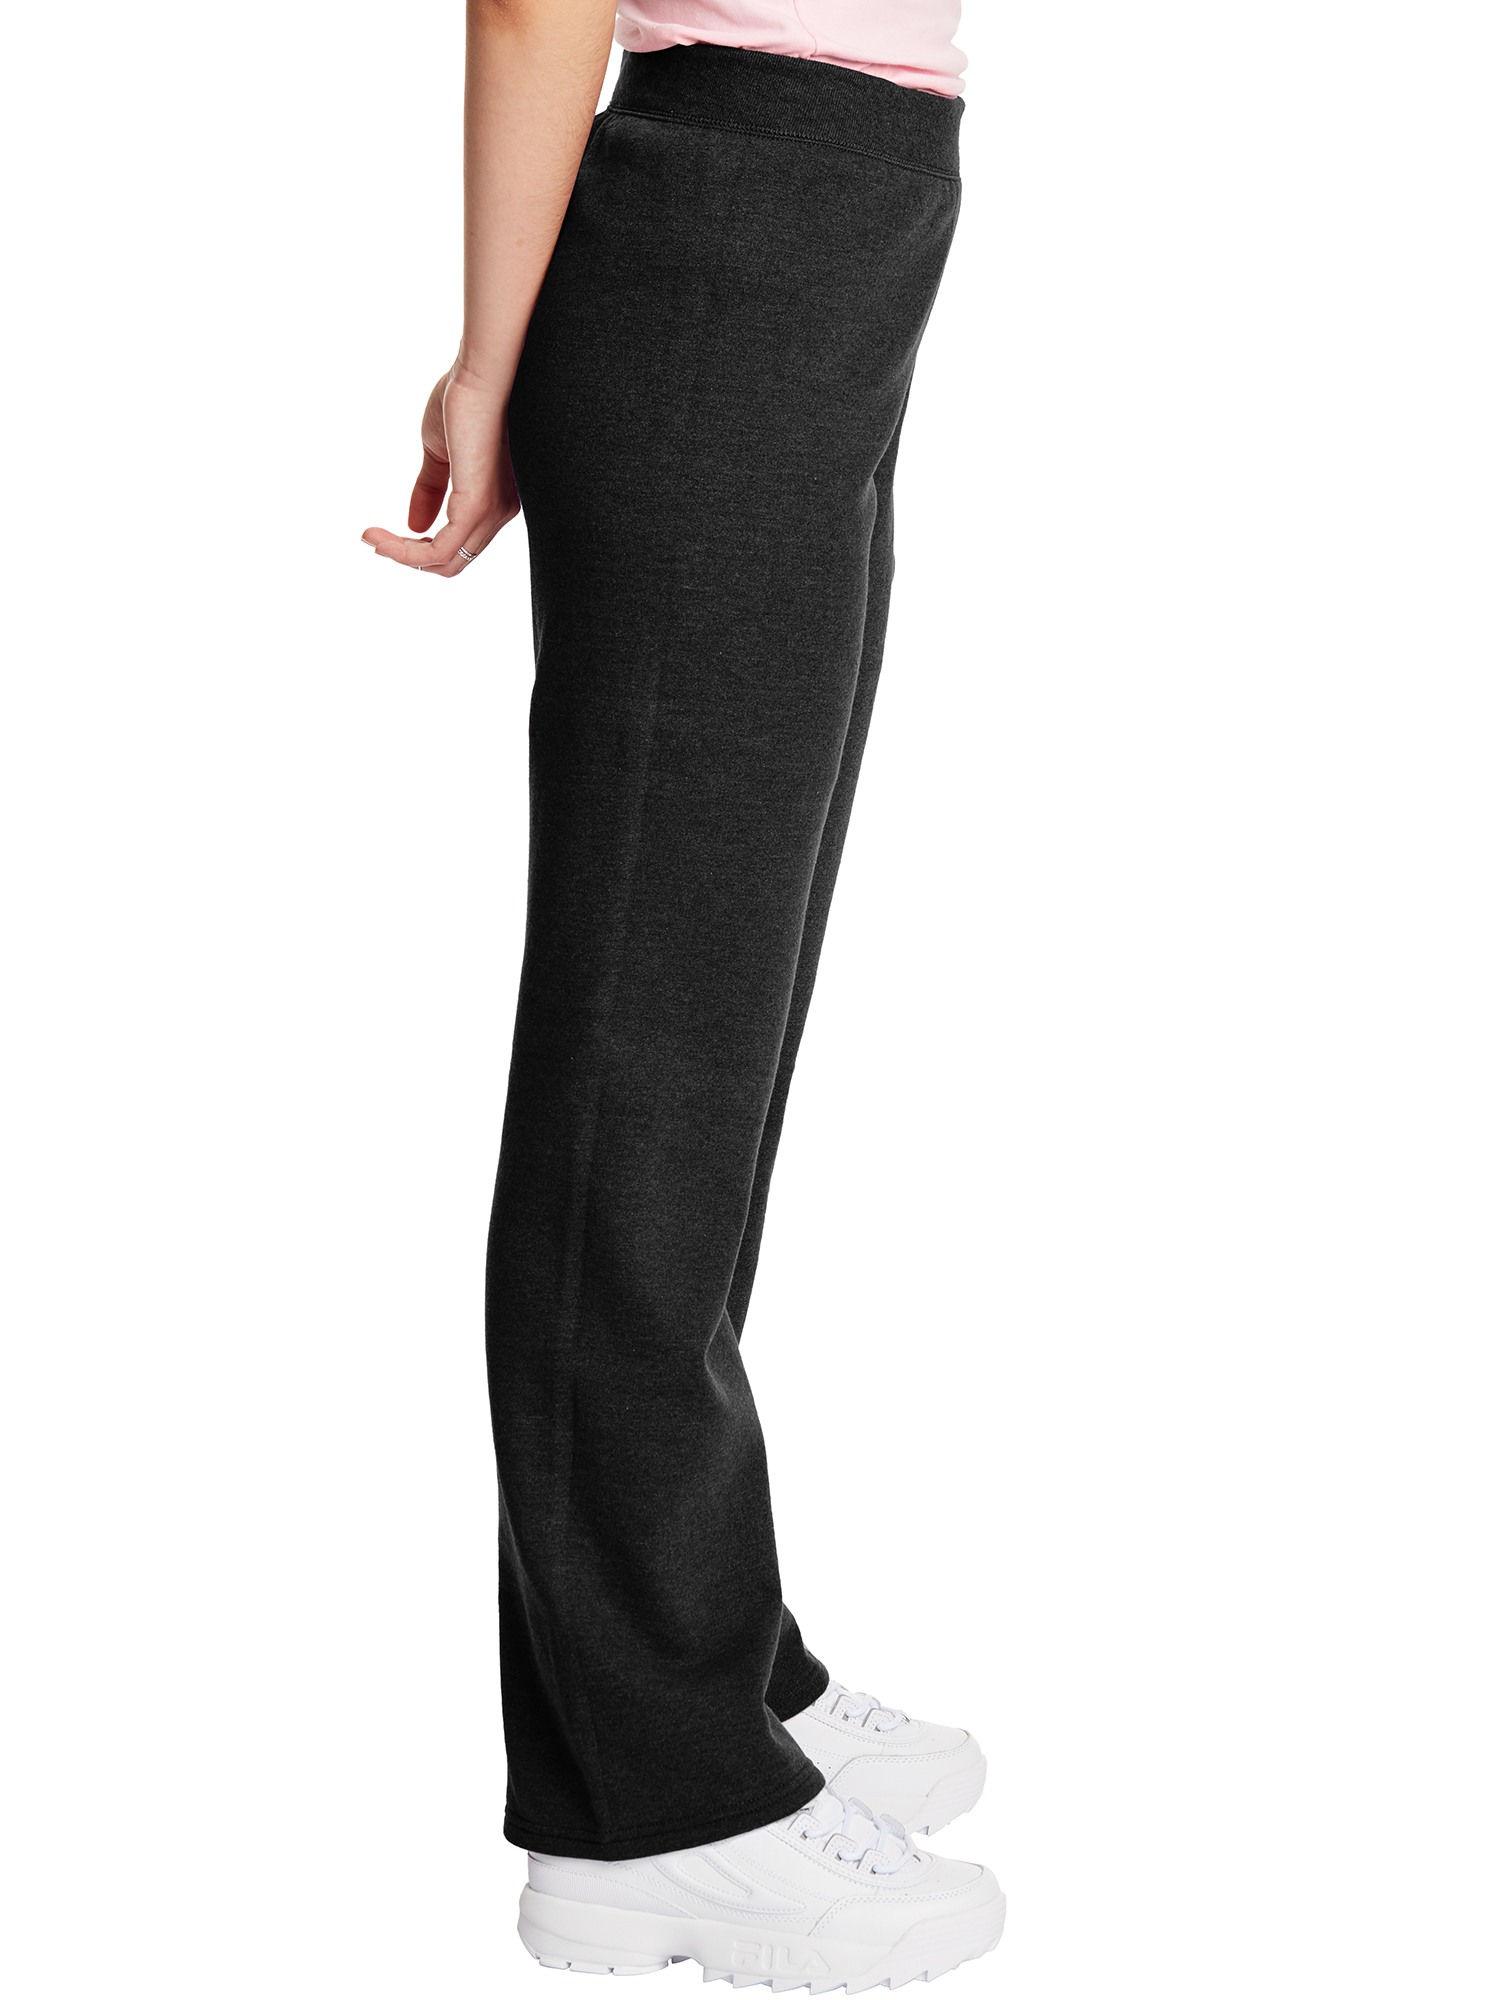 Hanes ComfortSoft EcoSmart Women's Open Bottom Fleece Sweatpants, Sizes S-XXL and Petite - image 3 of 5